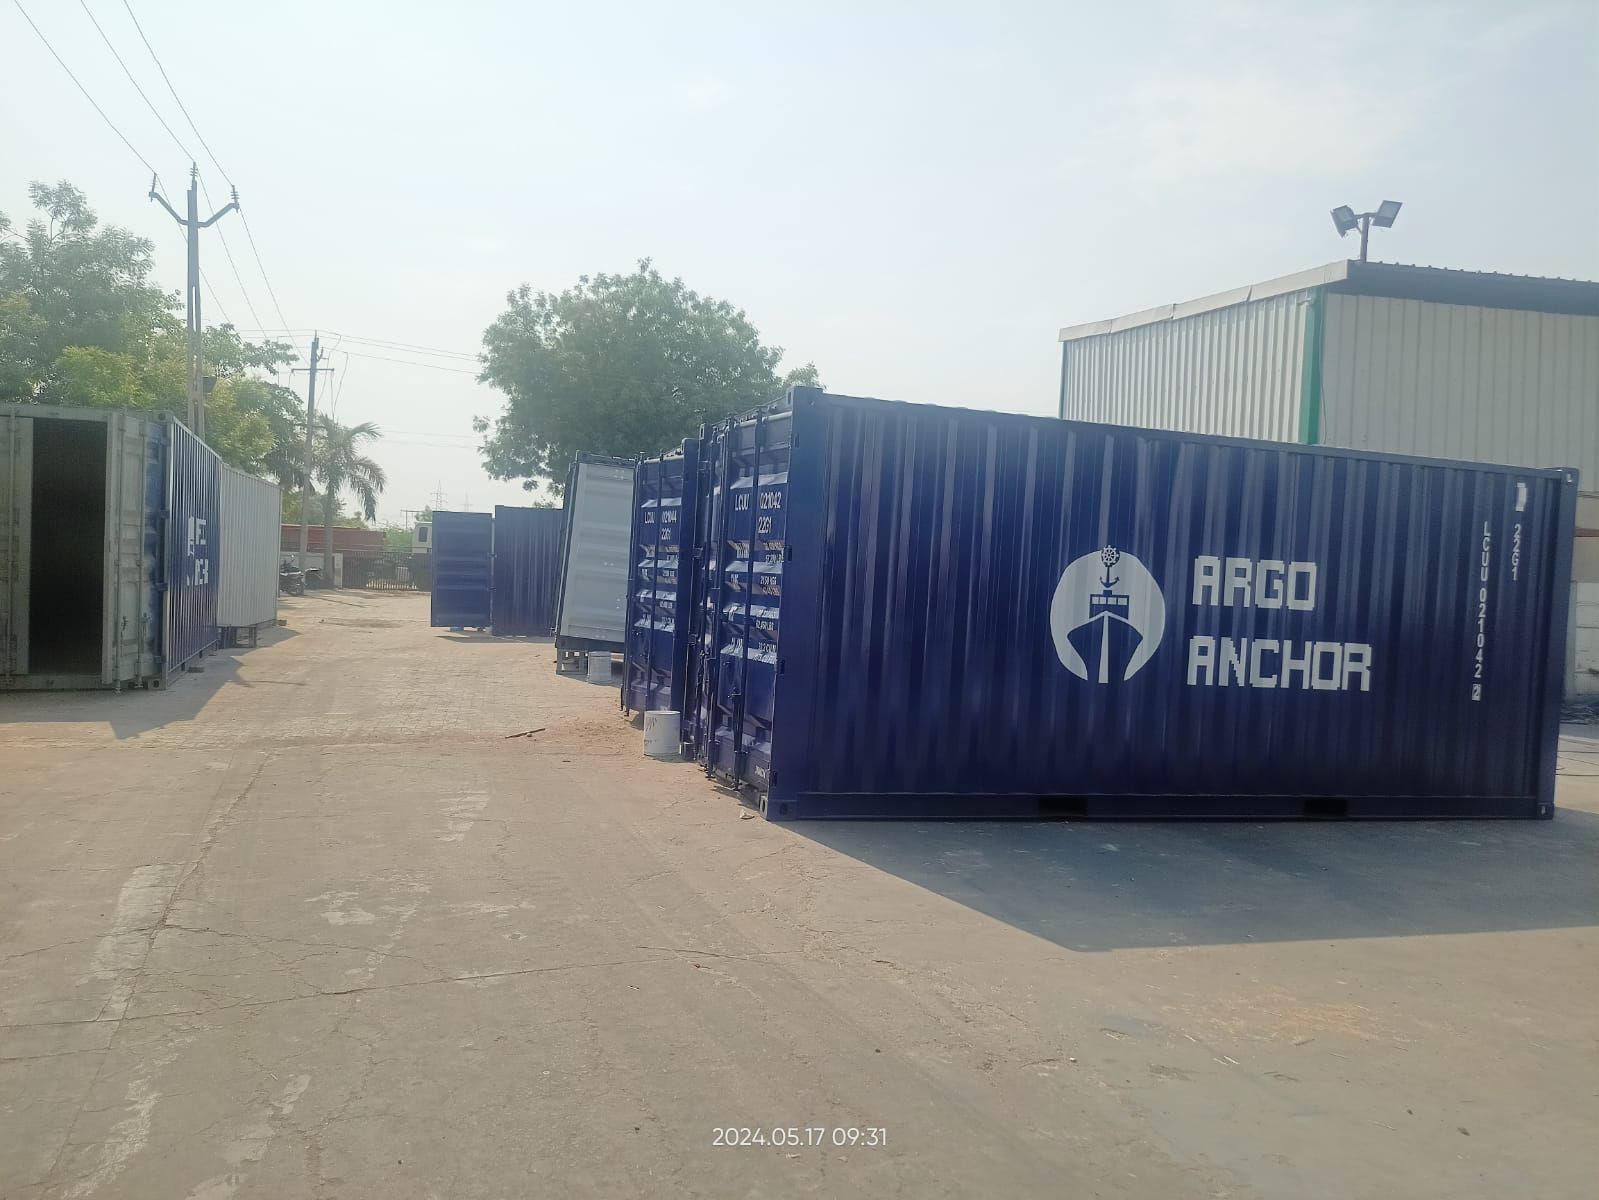 SYMCON 20' Dryvan Supplies to Argo Anchor, Dubai